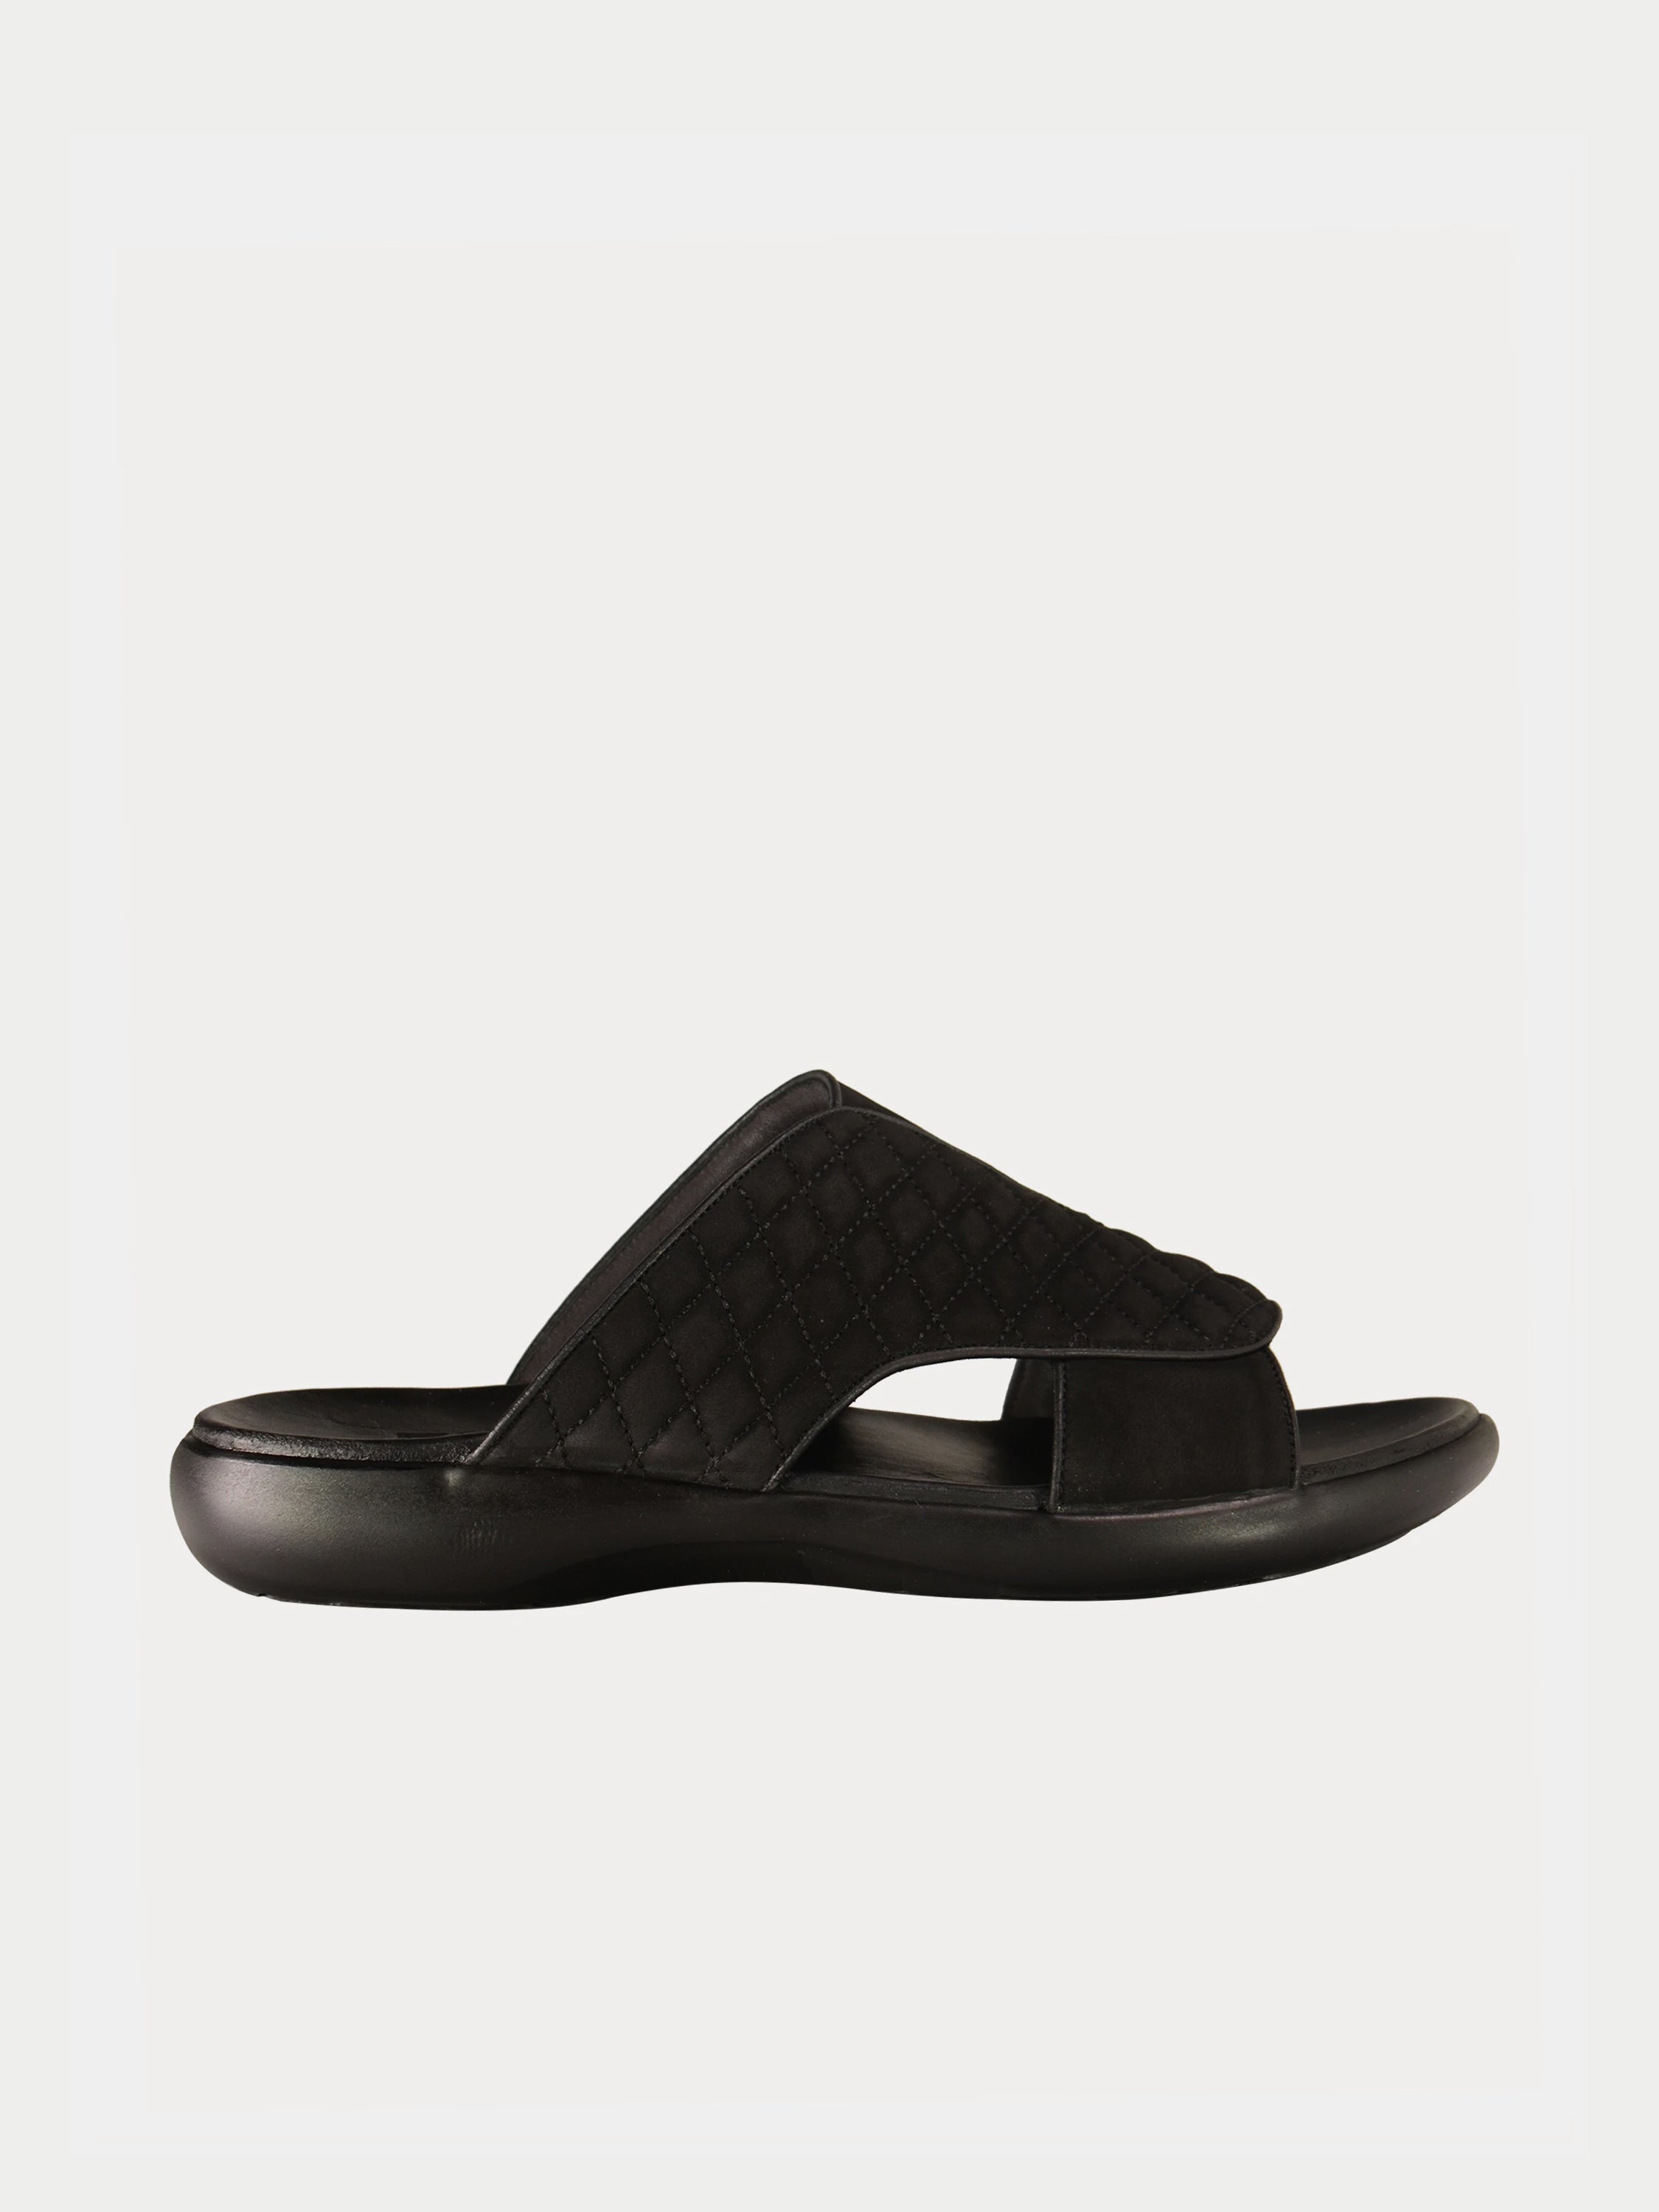 Barjeel Uno 0231610 Men's Arabic Sandals in Black Suede #color_Black